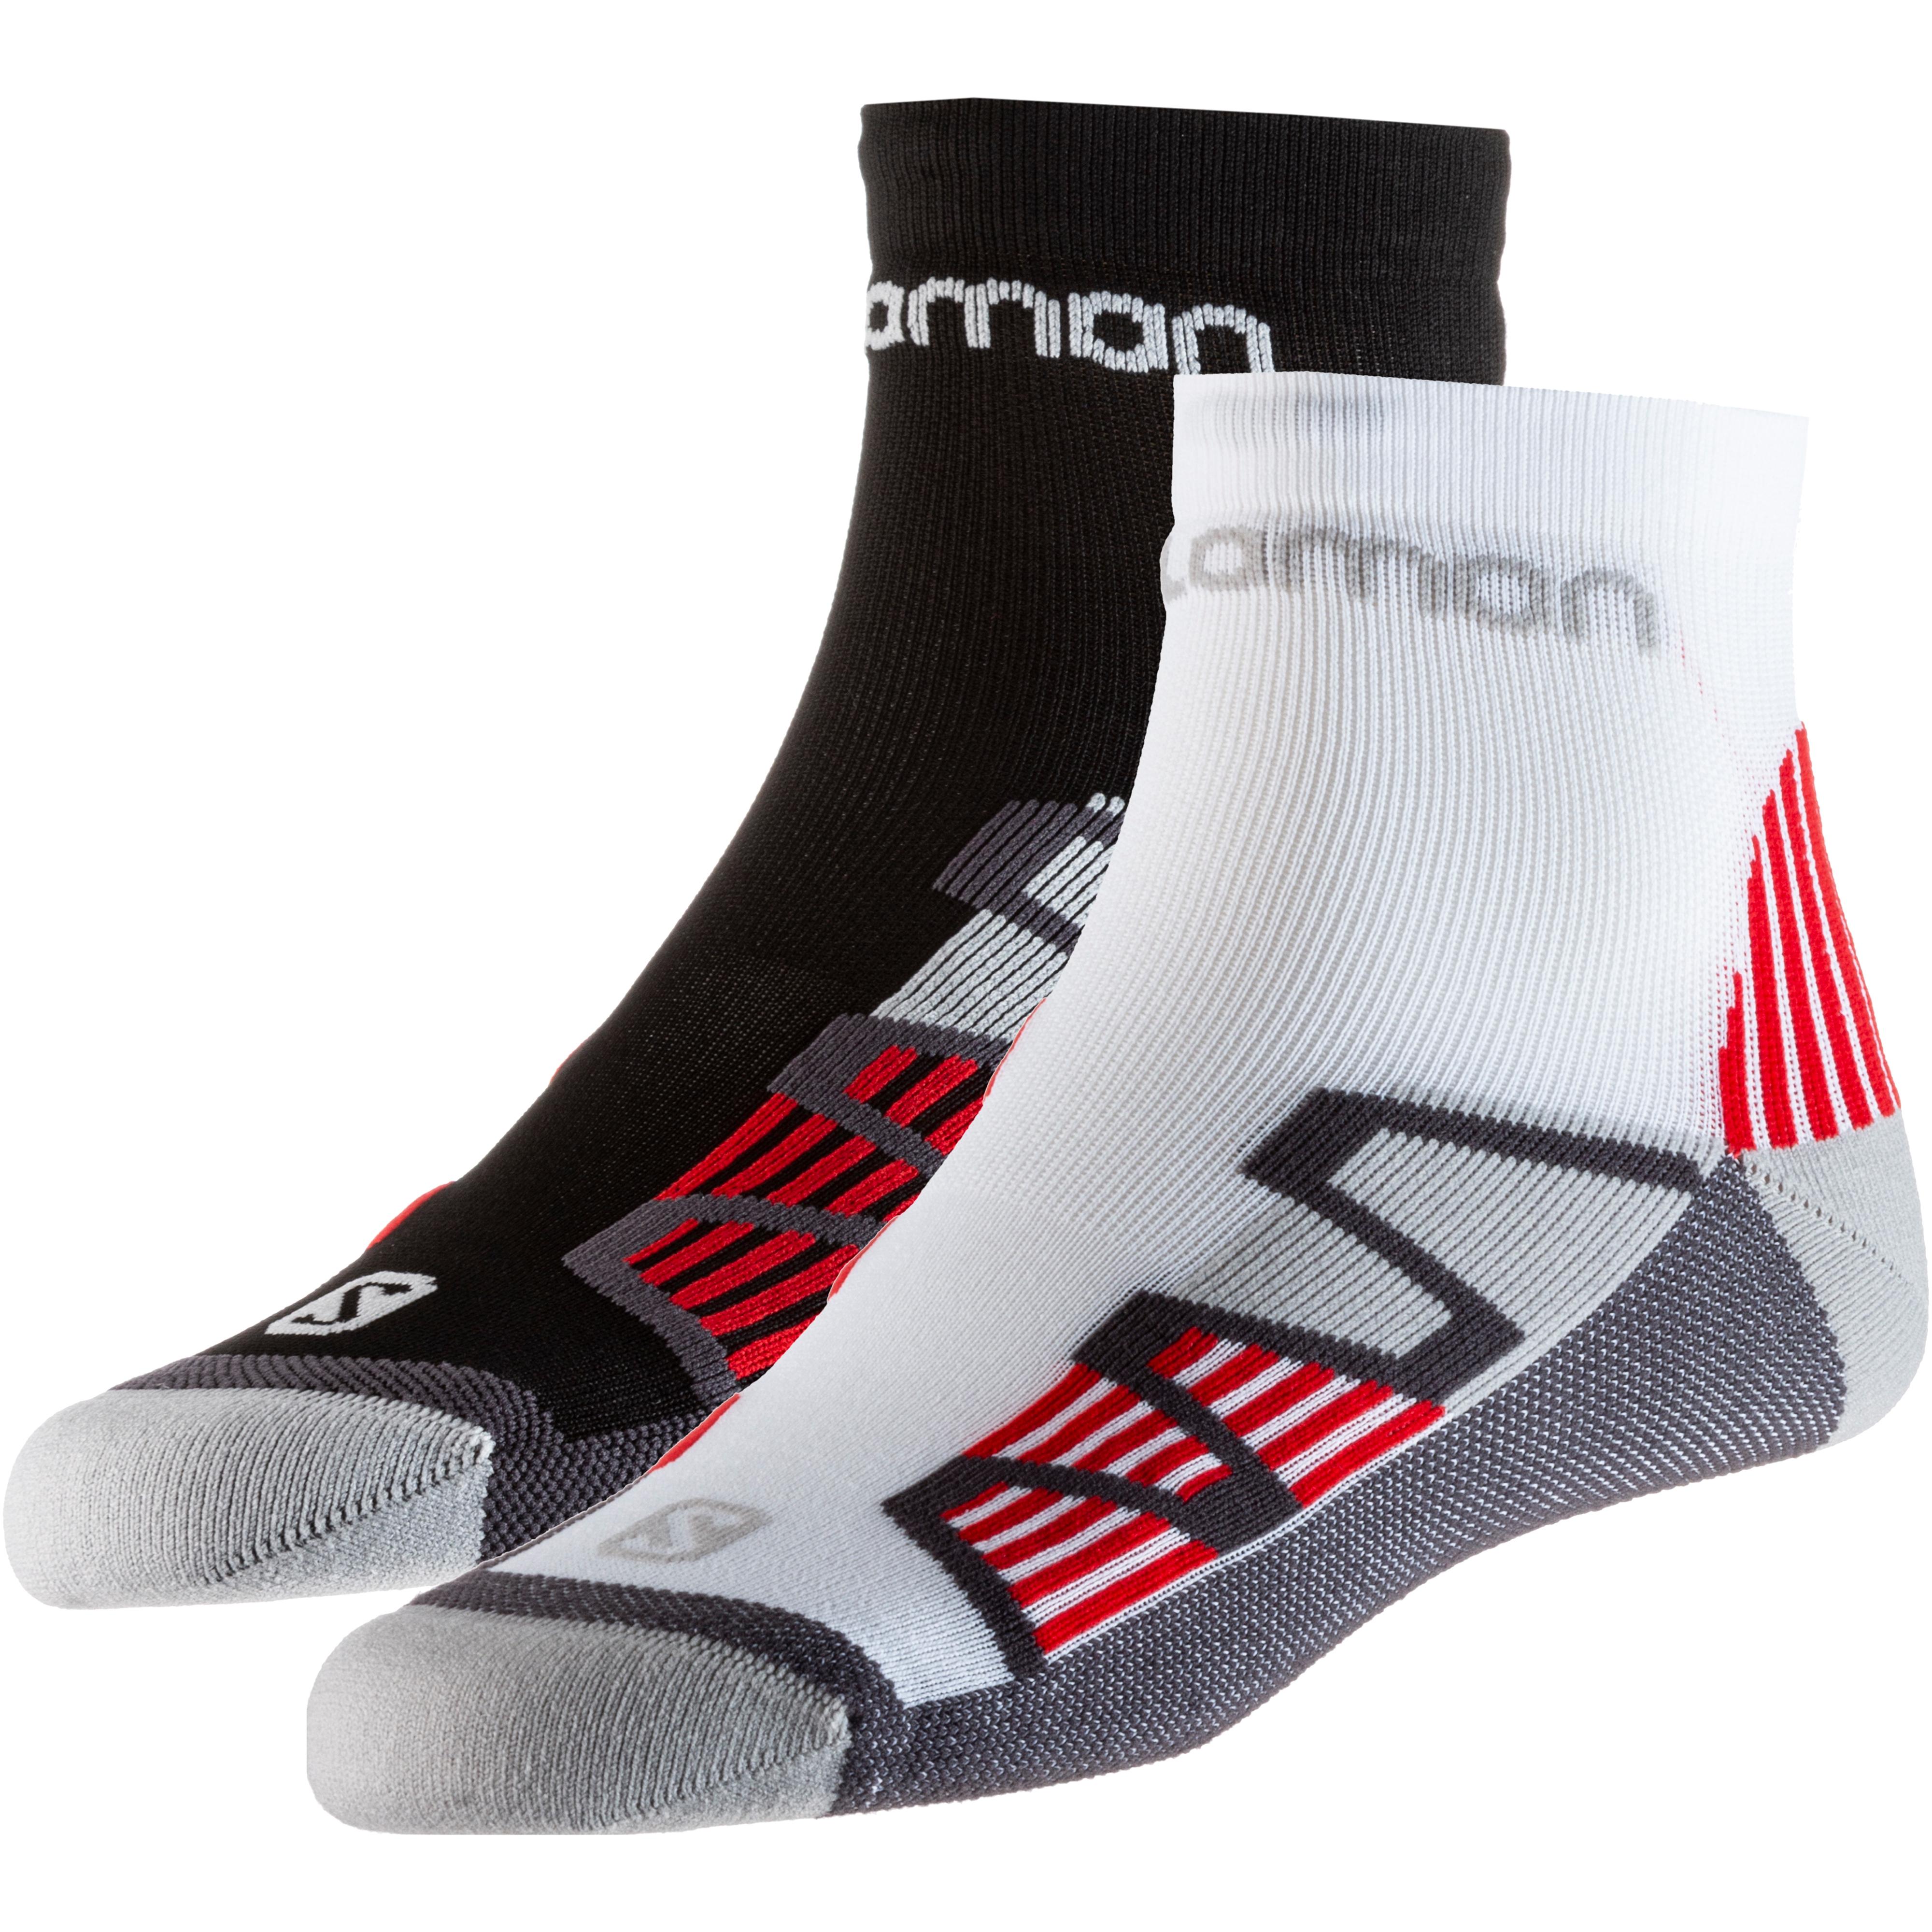 Salomon Socken Online von im black-red white-red Shop SportScheck kaufen